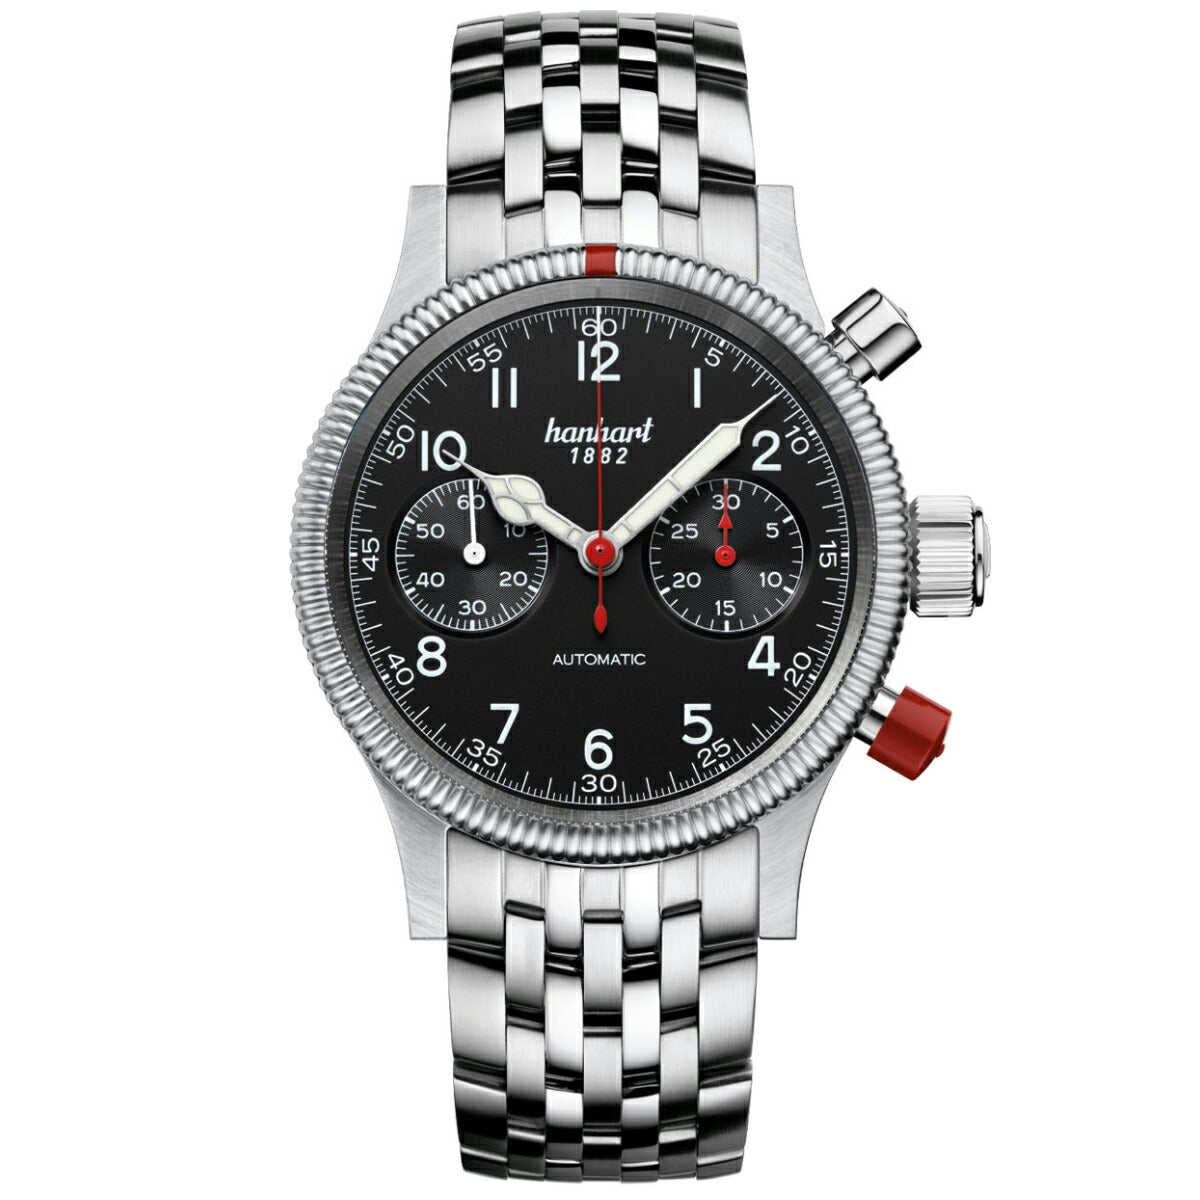 ハンハルト hanhart 腕時計 メンズ パイオニア マークツー ブラック PIONEER Mk II Black 自動巻き 1H716.210-6428